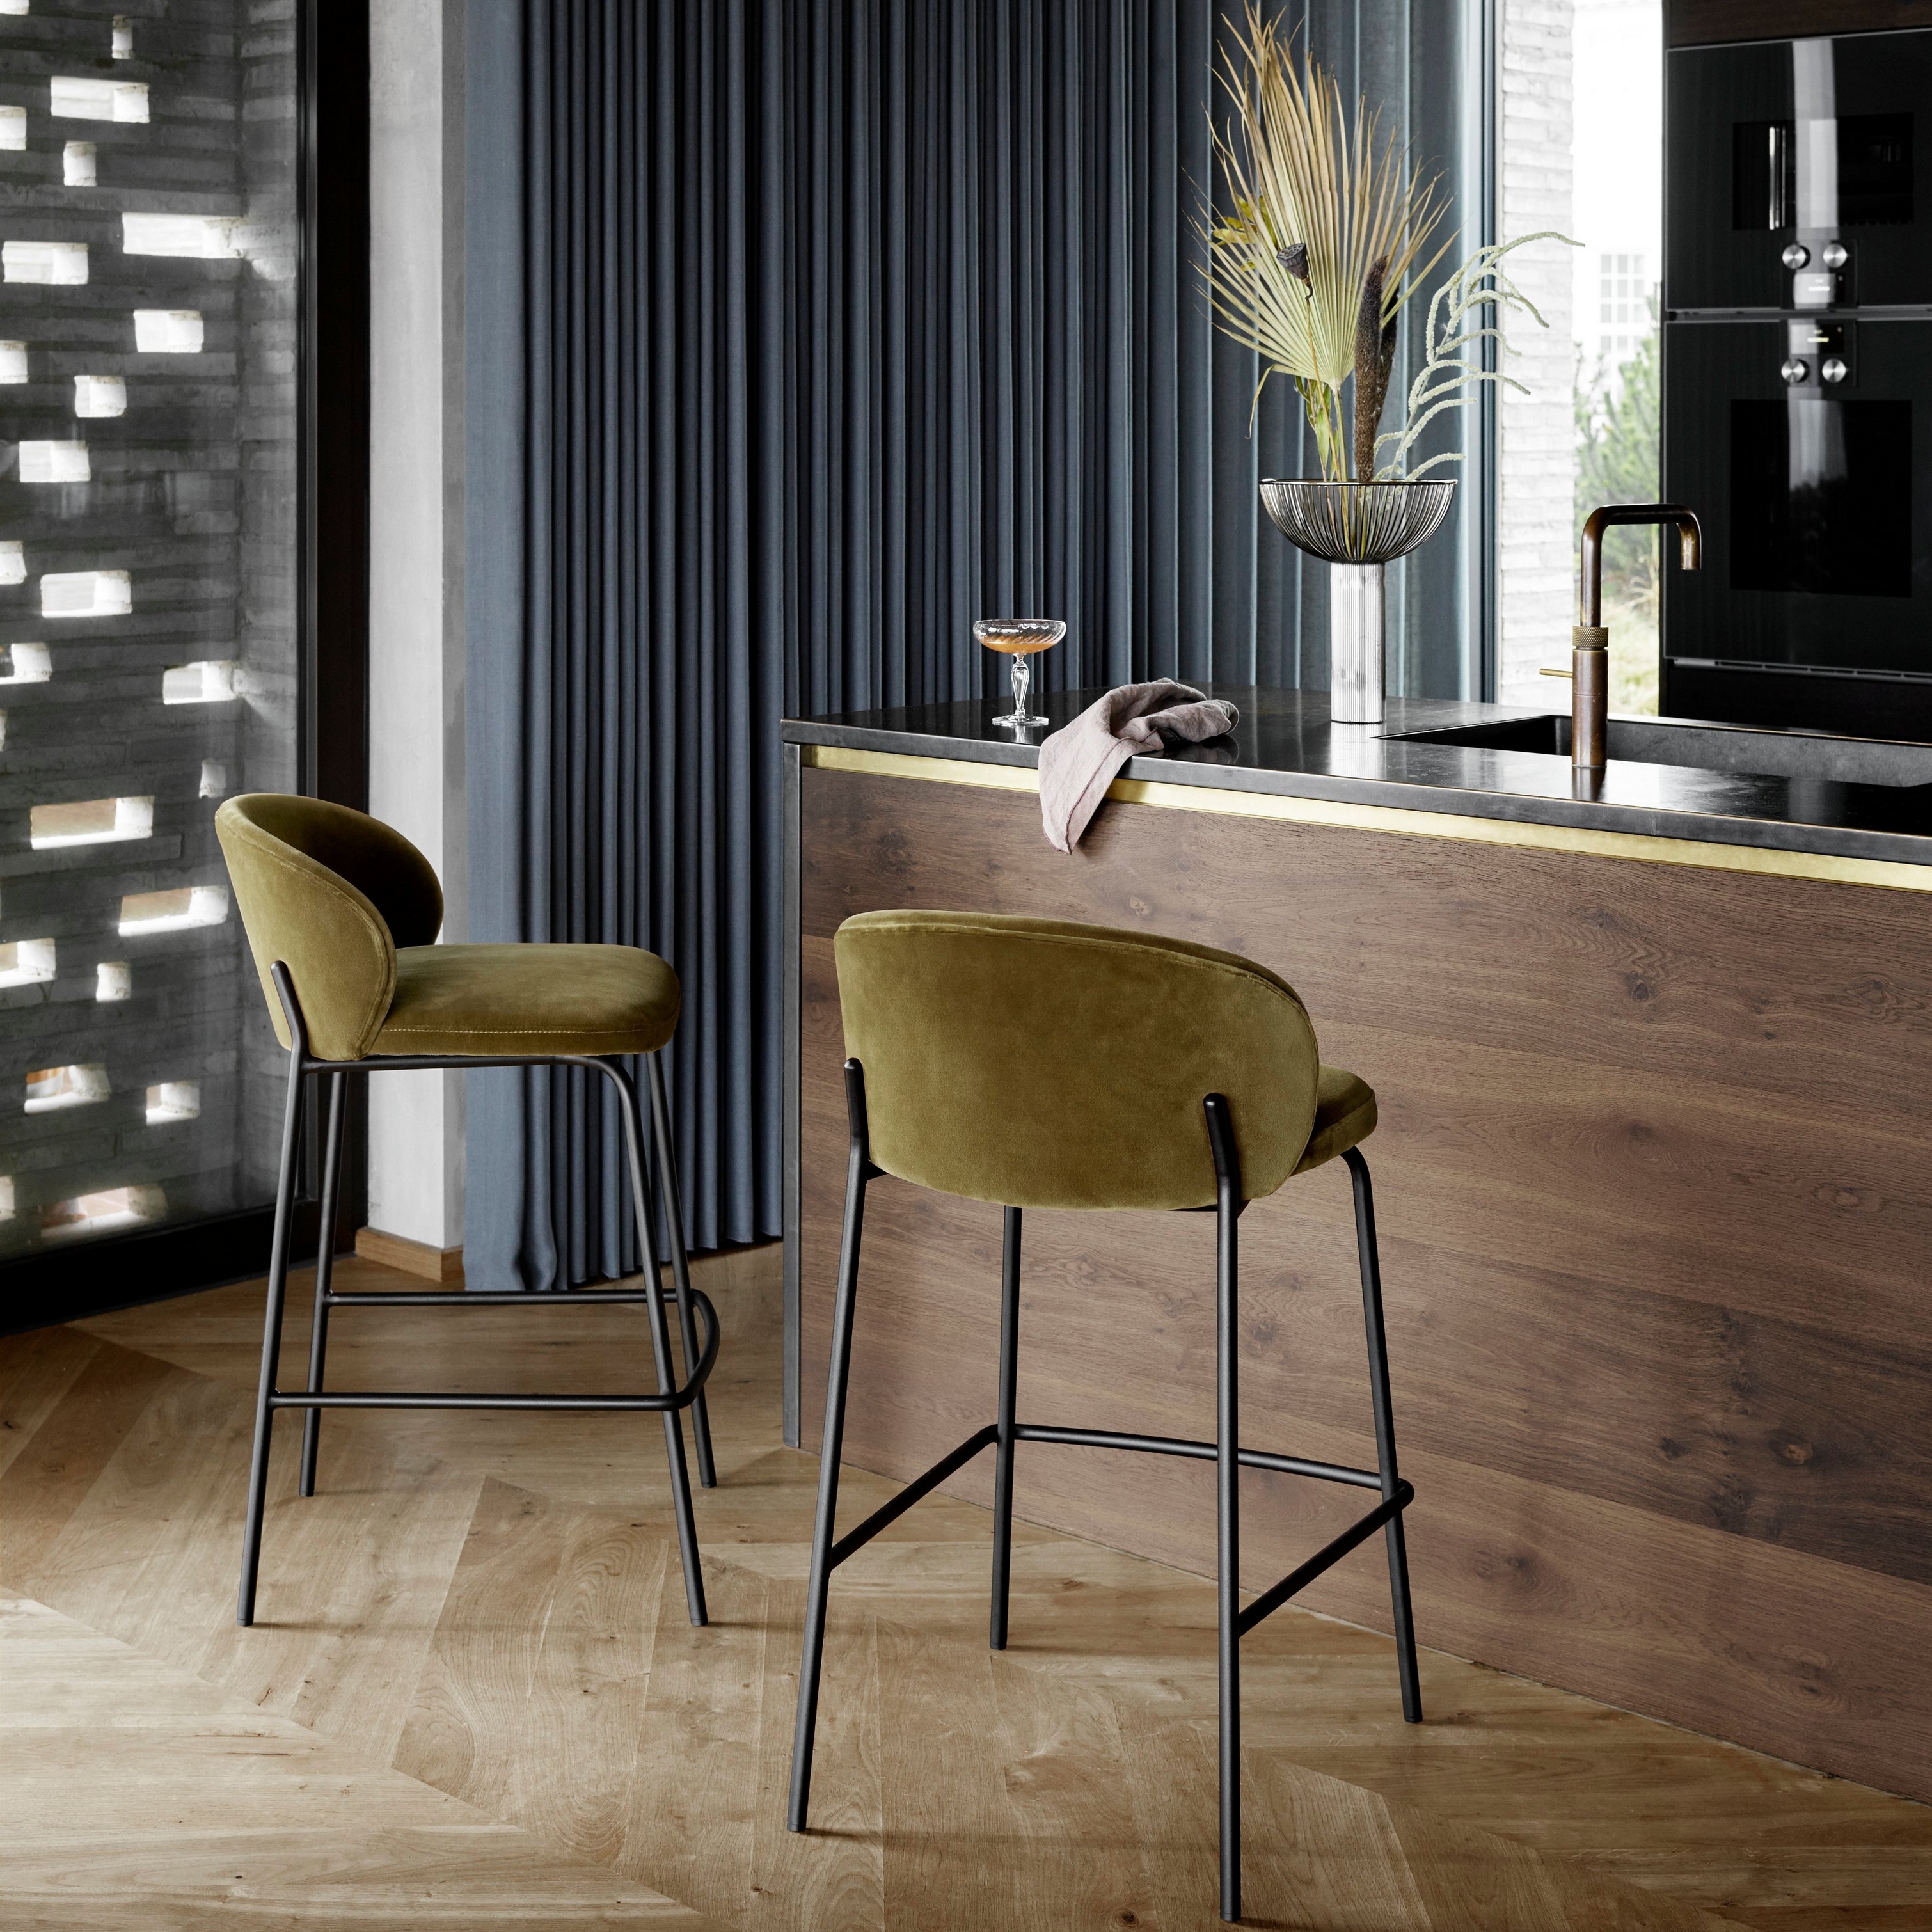 Chaises de bar en tissu Velvet sur un comptoir de cuisine en bois avec appareils noirs et éclairage suspendu.